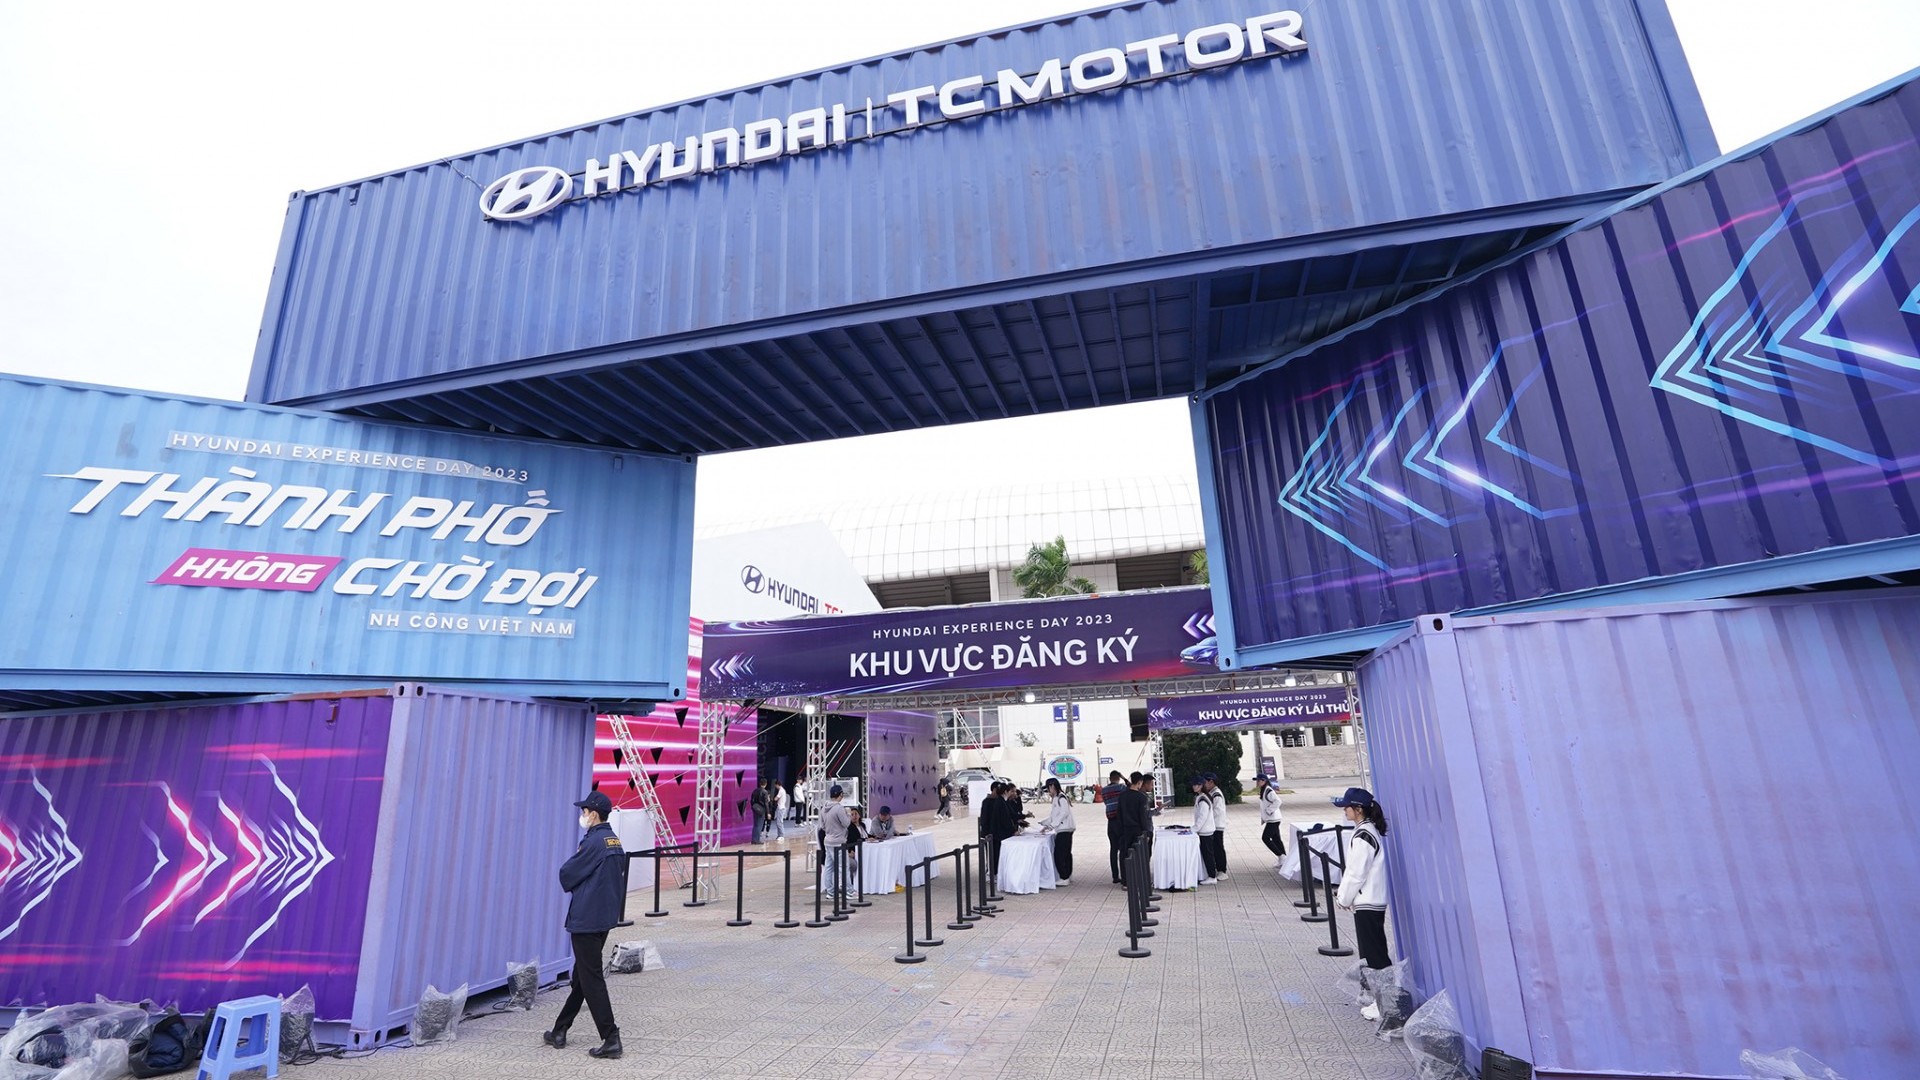 Những trải nghiệm khó quên cùng Hyundai Experience Day 2023 tại Hà Nội